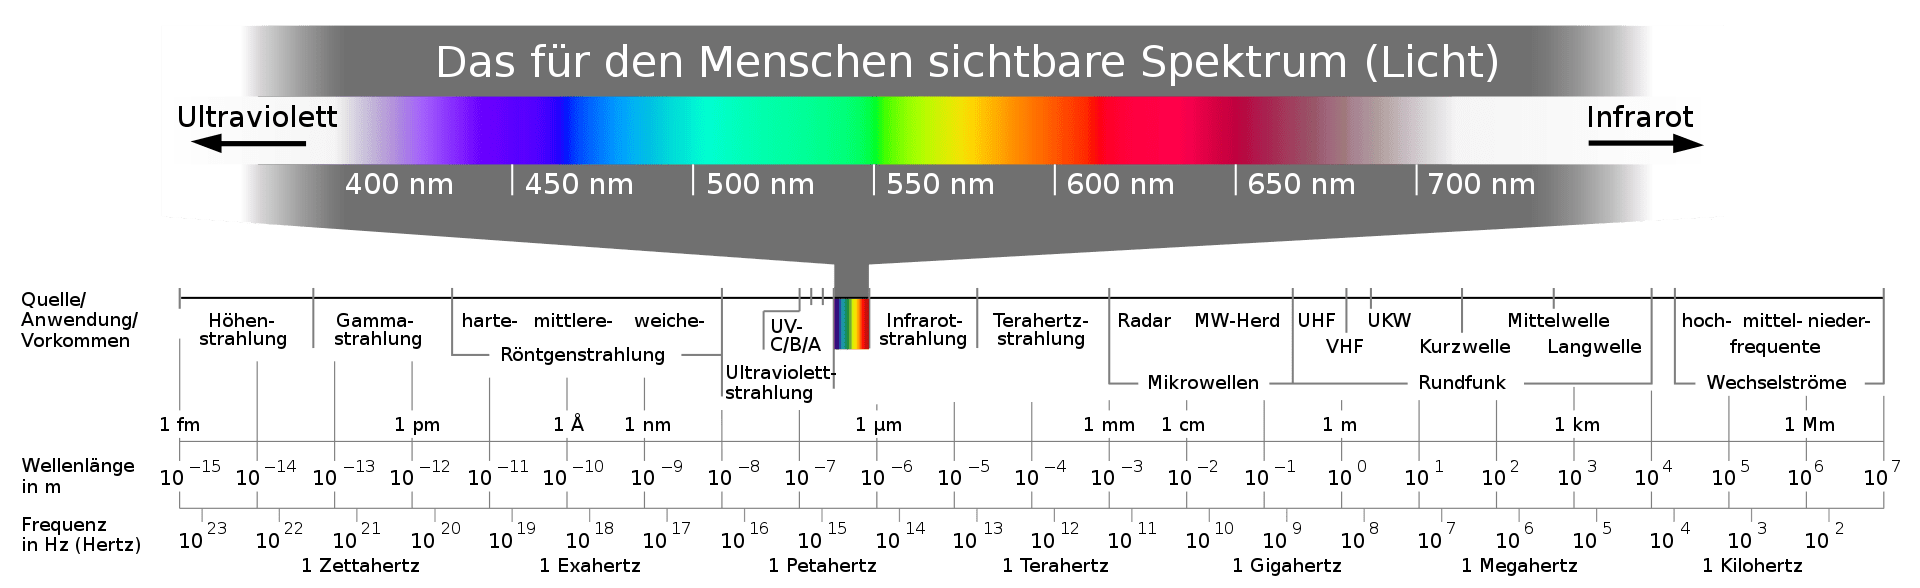 Sichtbares Spektrum Tabelle